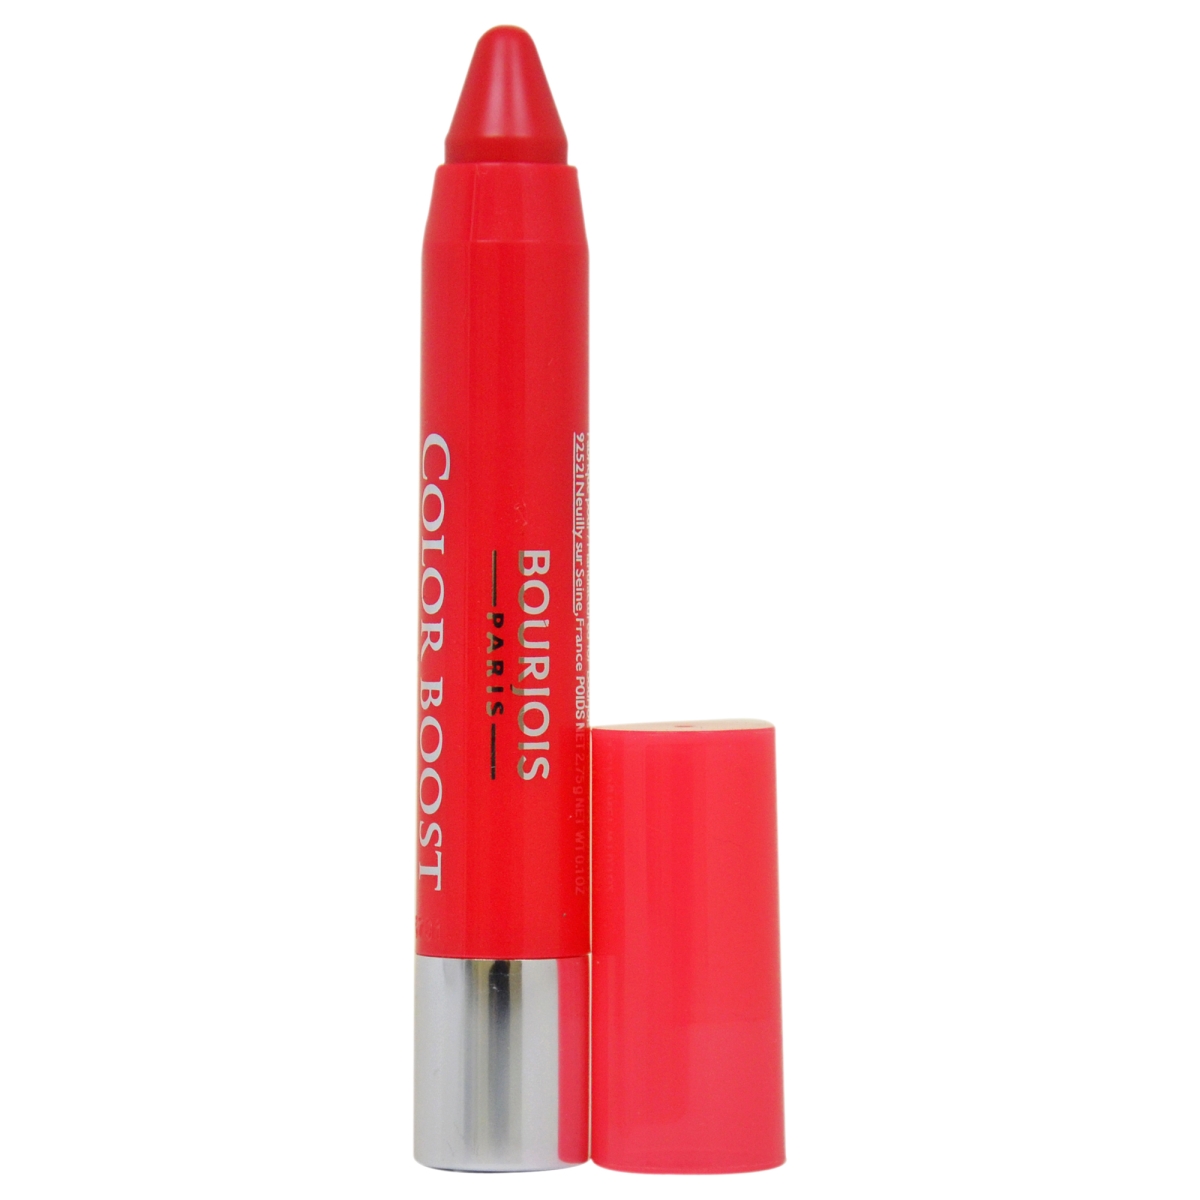 W-c-4466 0.1 Oz No. 02 Spf 15 Color Boost Waterproof Fuchsia Libre Lip Stick For Women